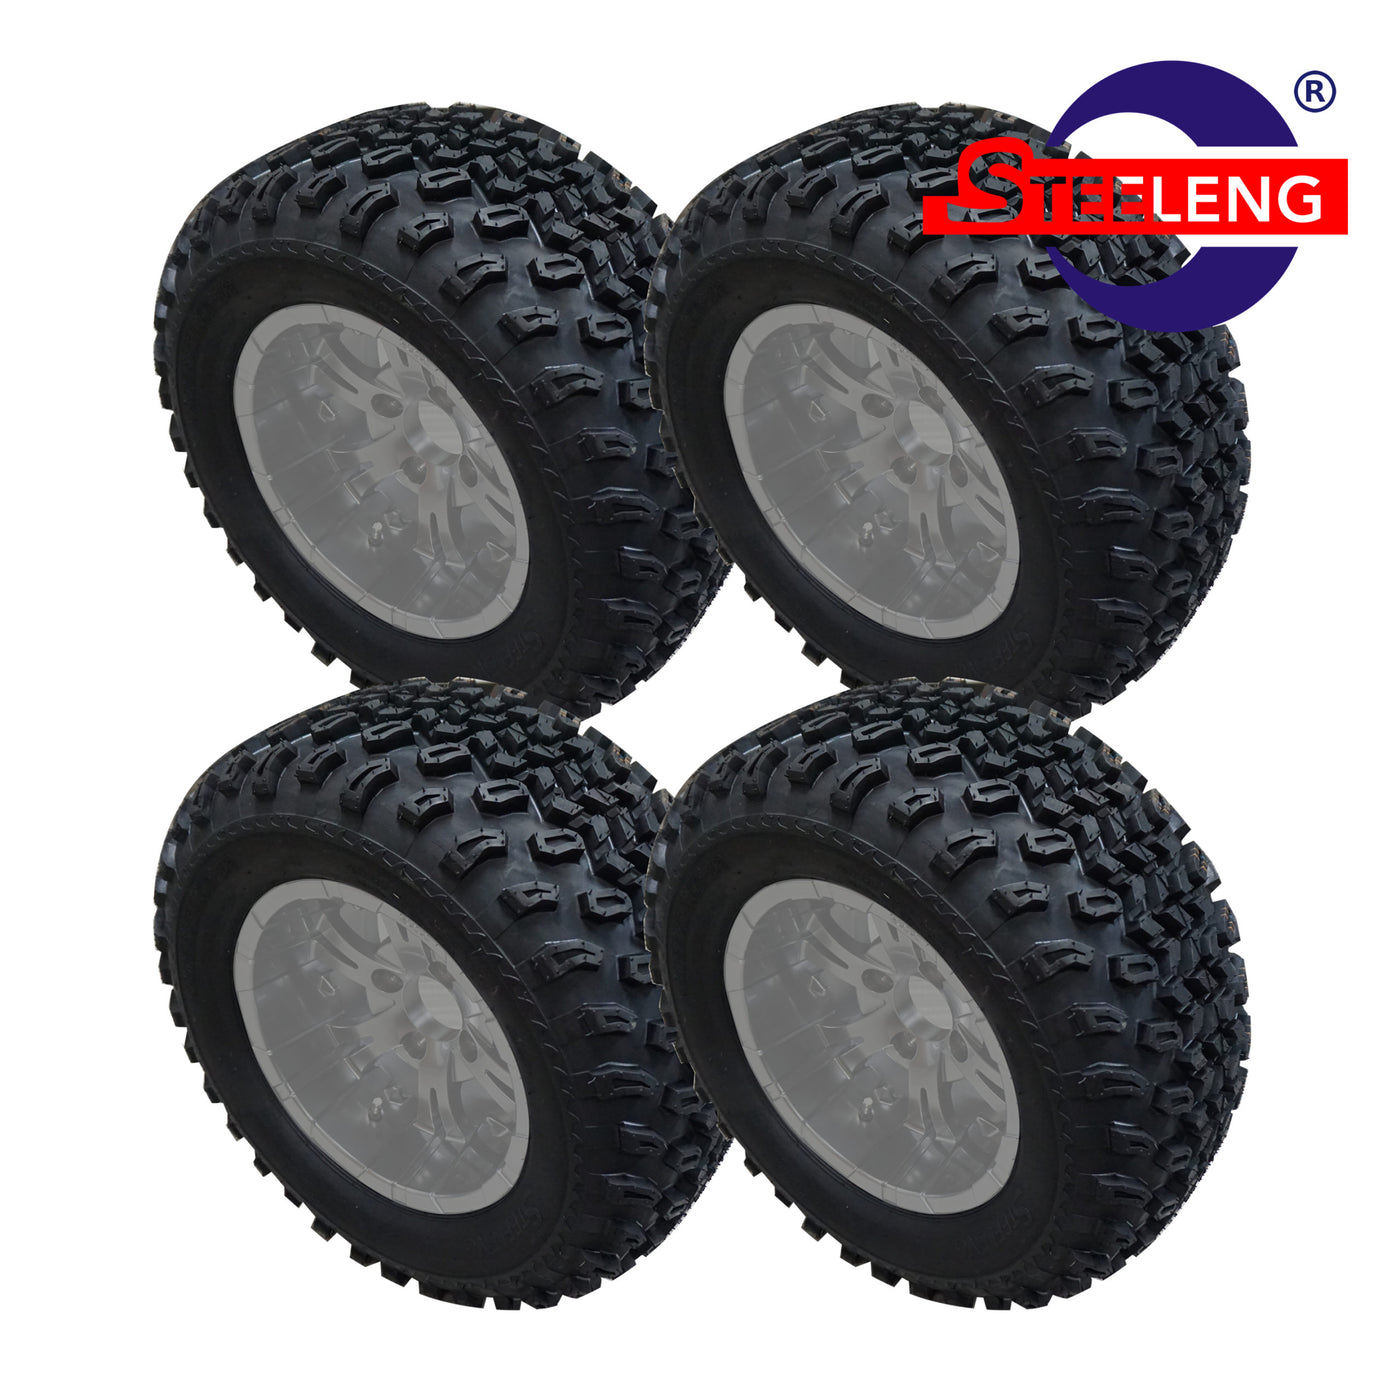 STEELENG 23″x10.5″-12″ All-Terrain Tires (Set of 4)